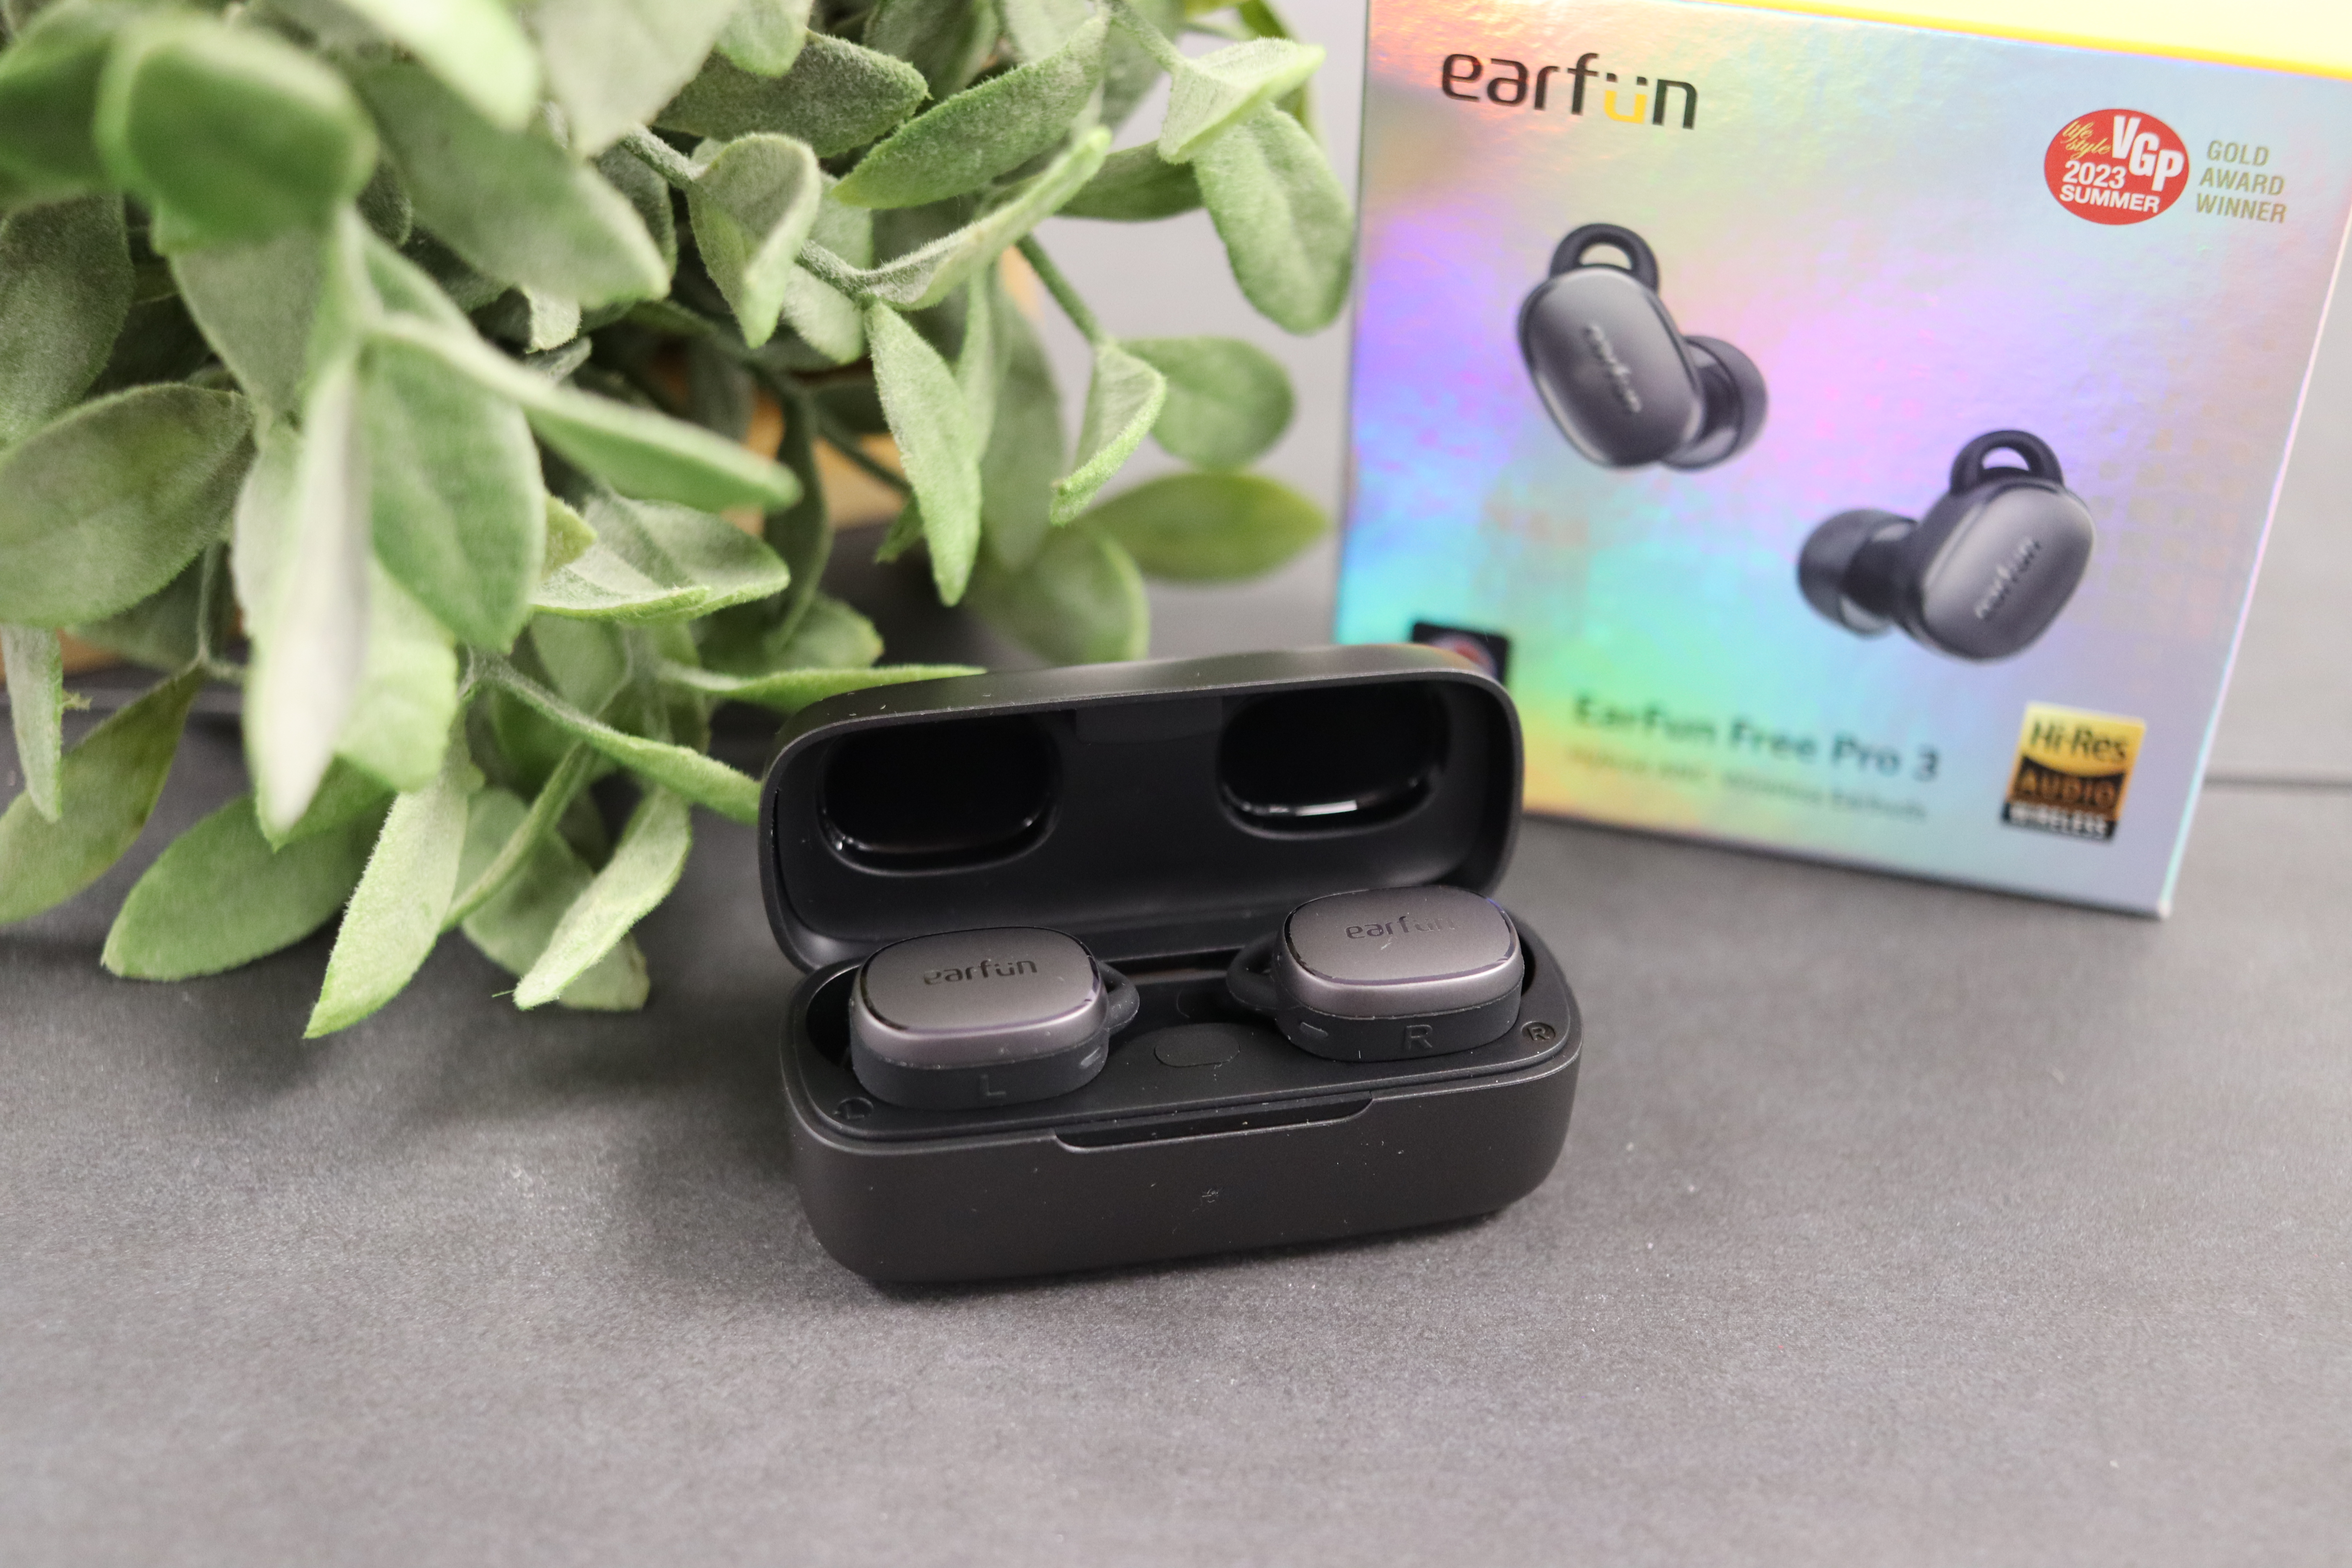 Test: Earfun Free Pro 3 ANC-In-Ears mit Snapdragon Sound | In-Ear-Kopfhörer